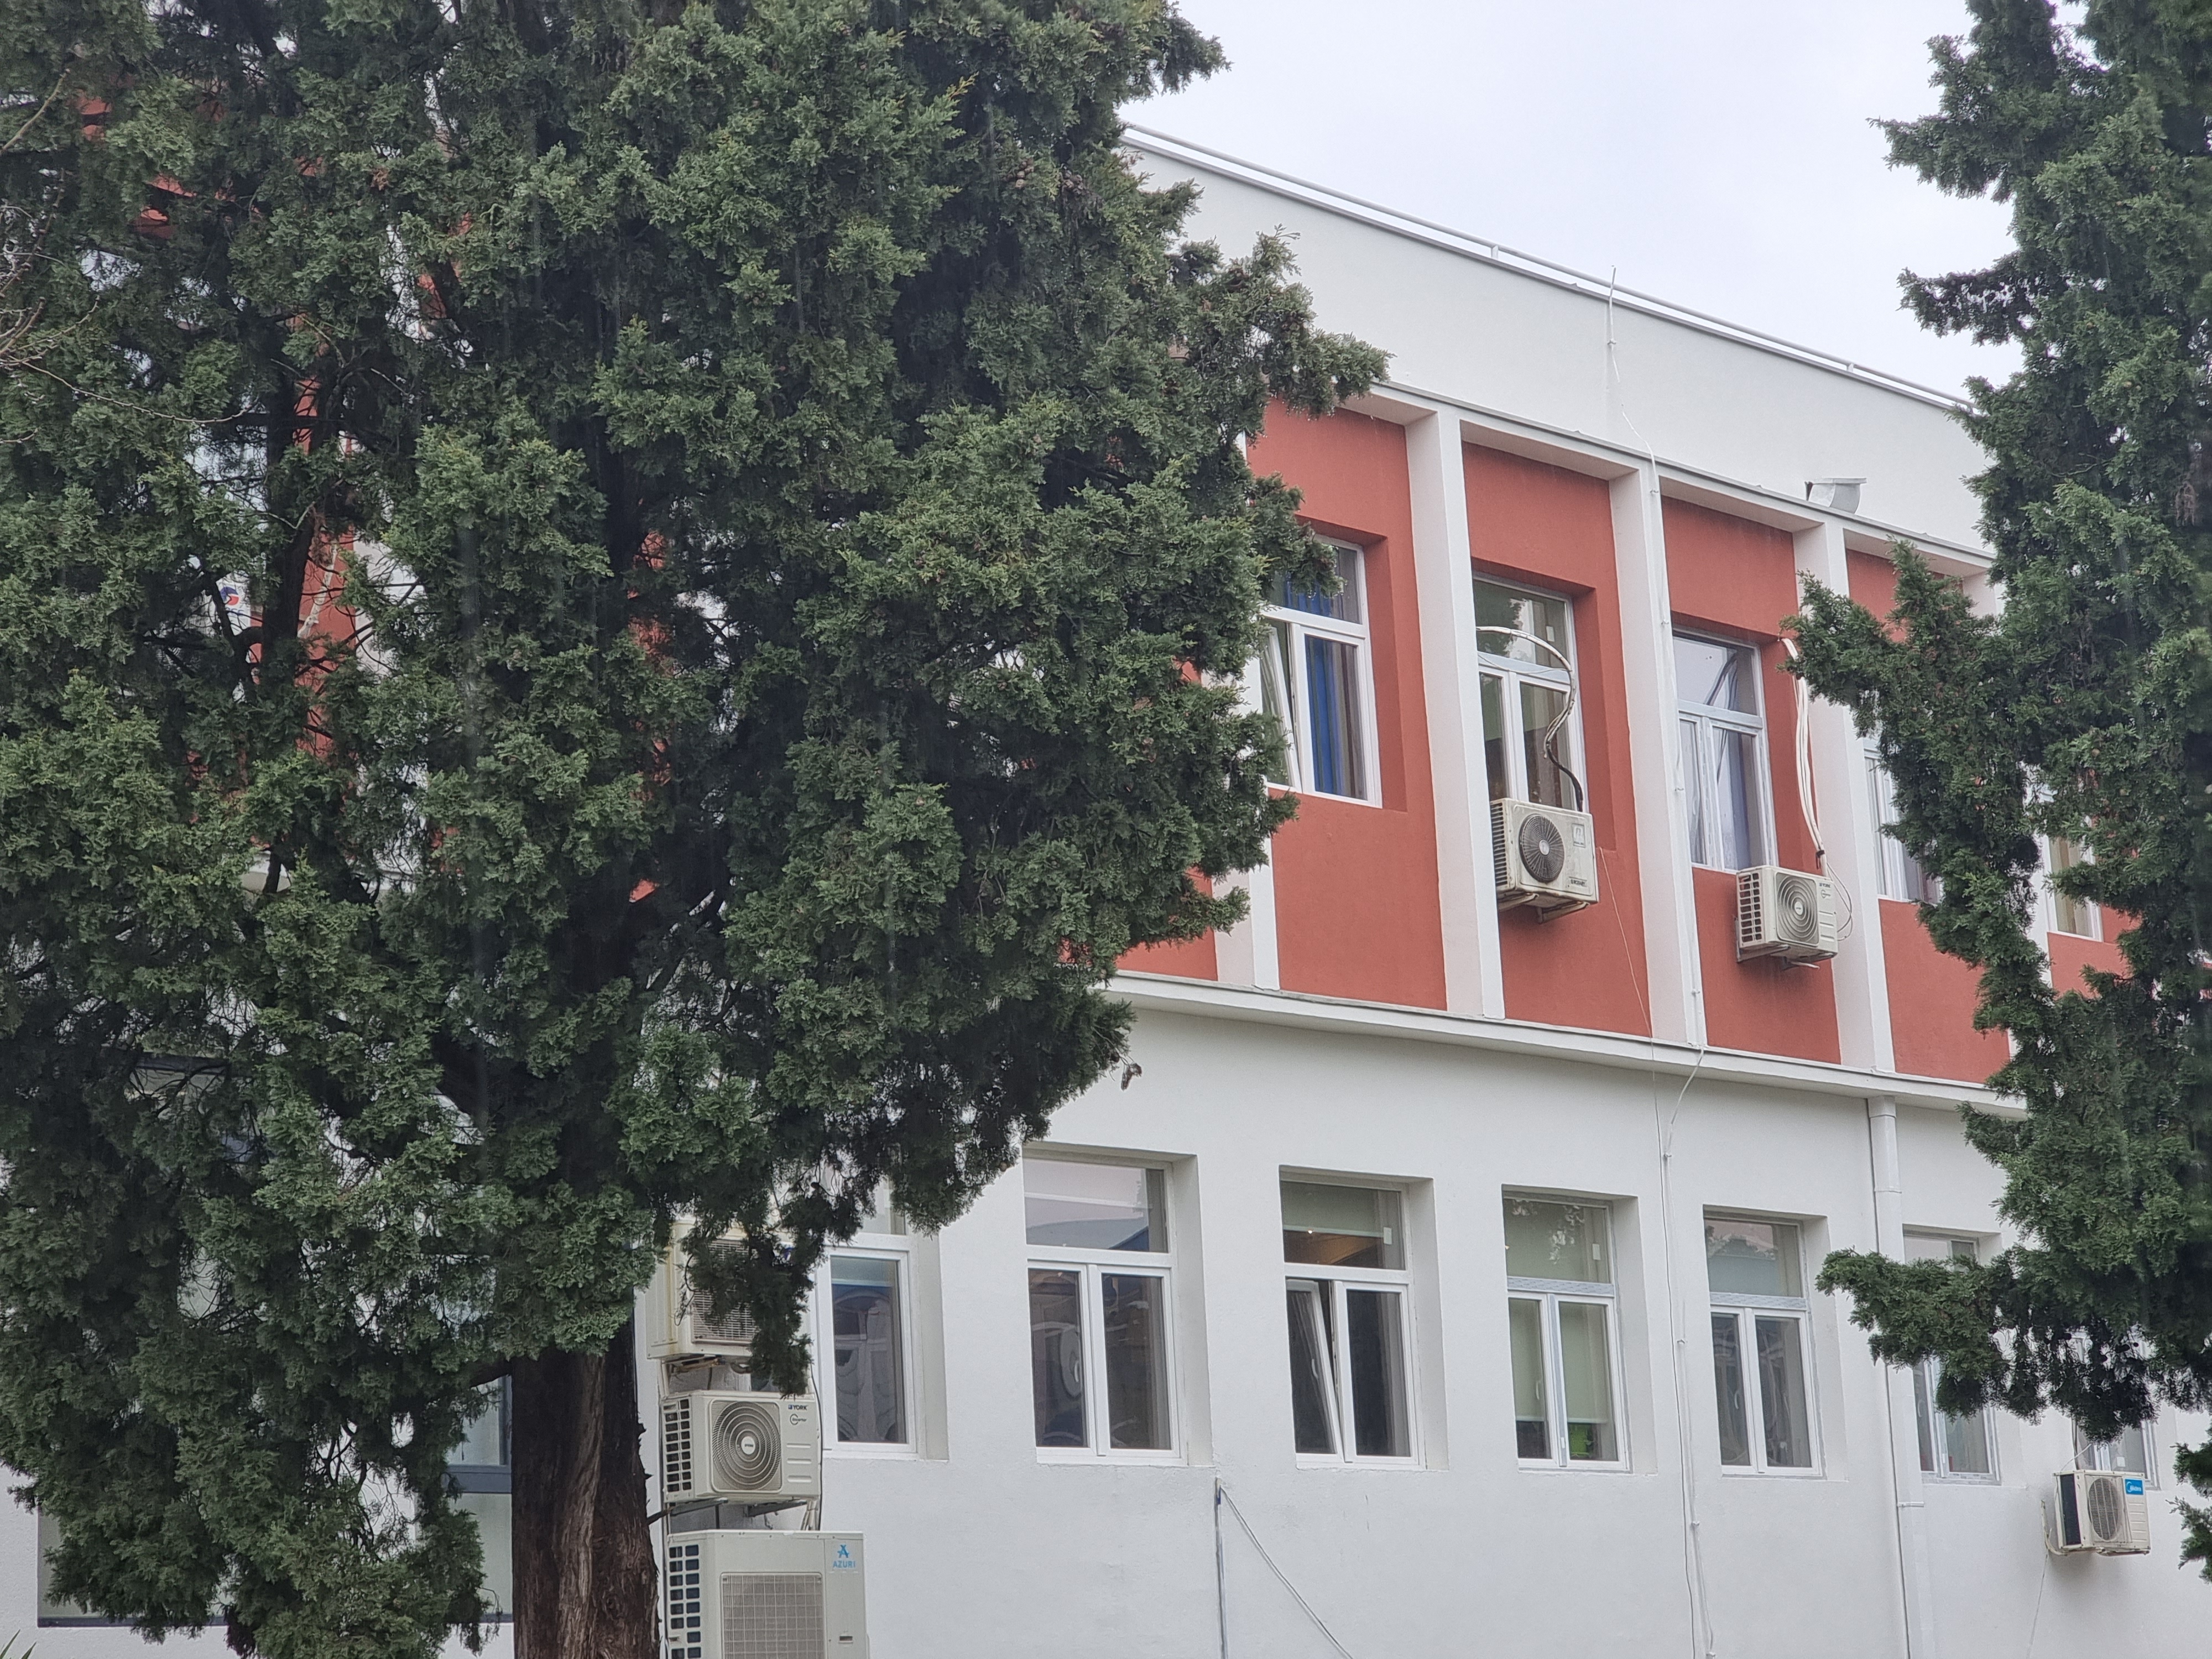 Završena temeljna sanacija fasade na objektu KIC-a "Budo Tomović"